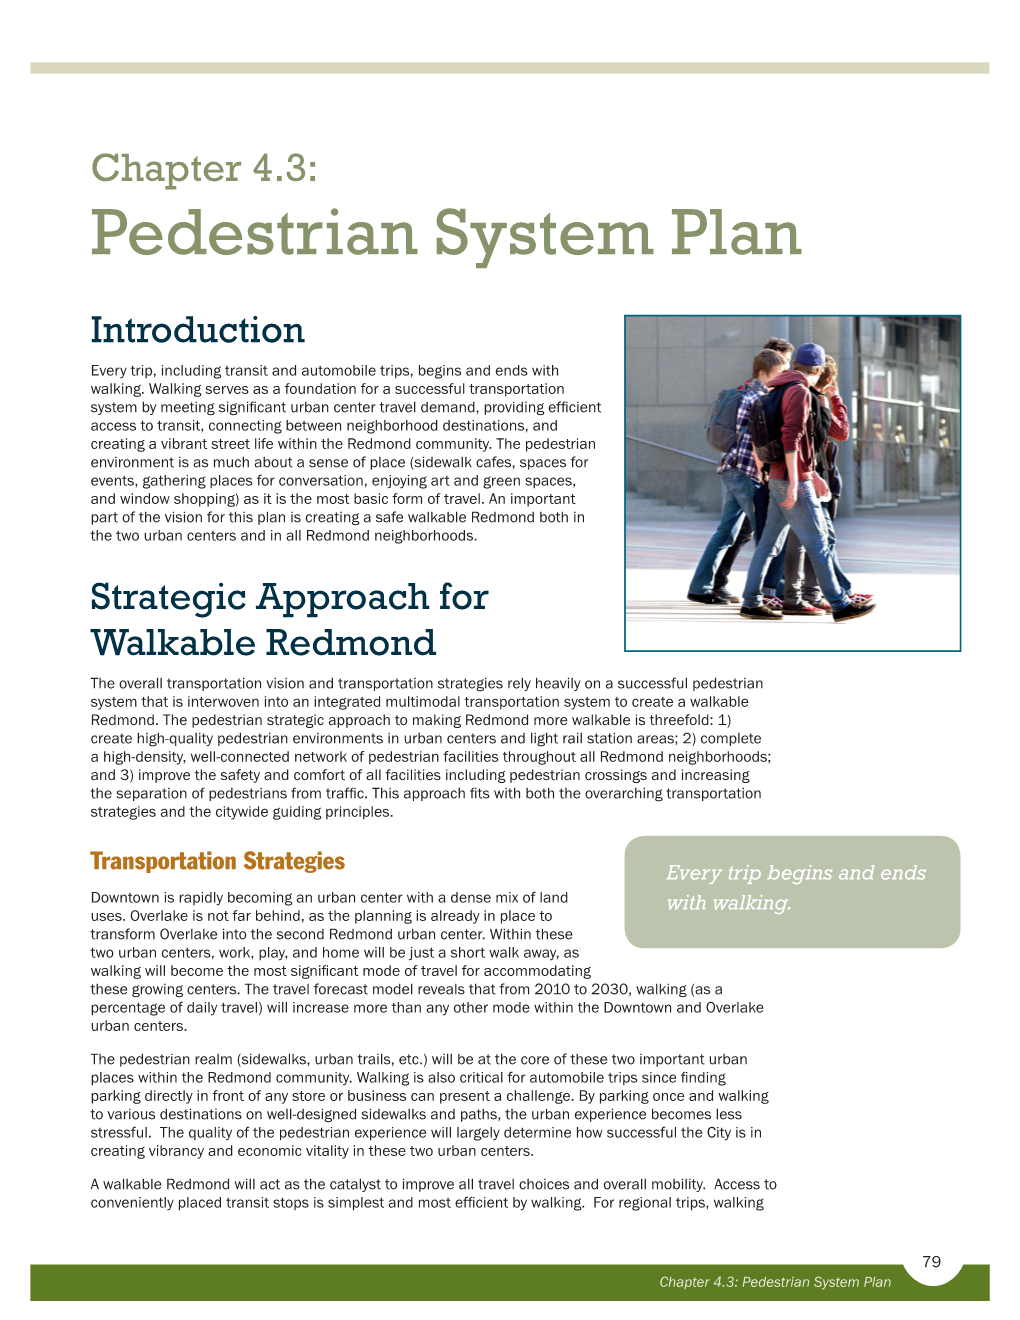 Chapter 4.3: Pedestrian System Plan